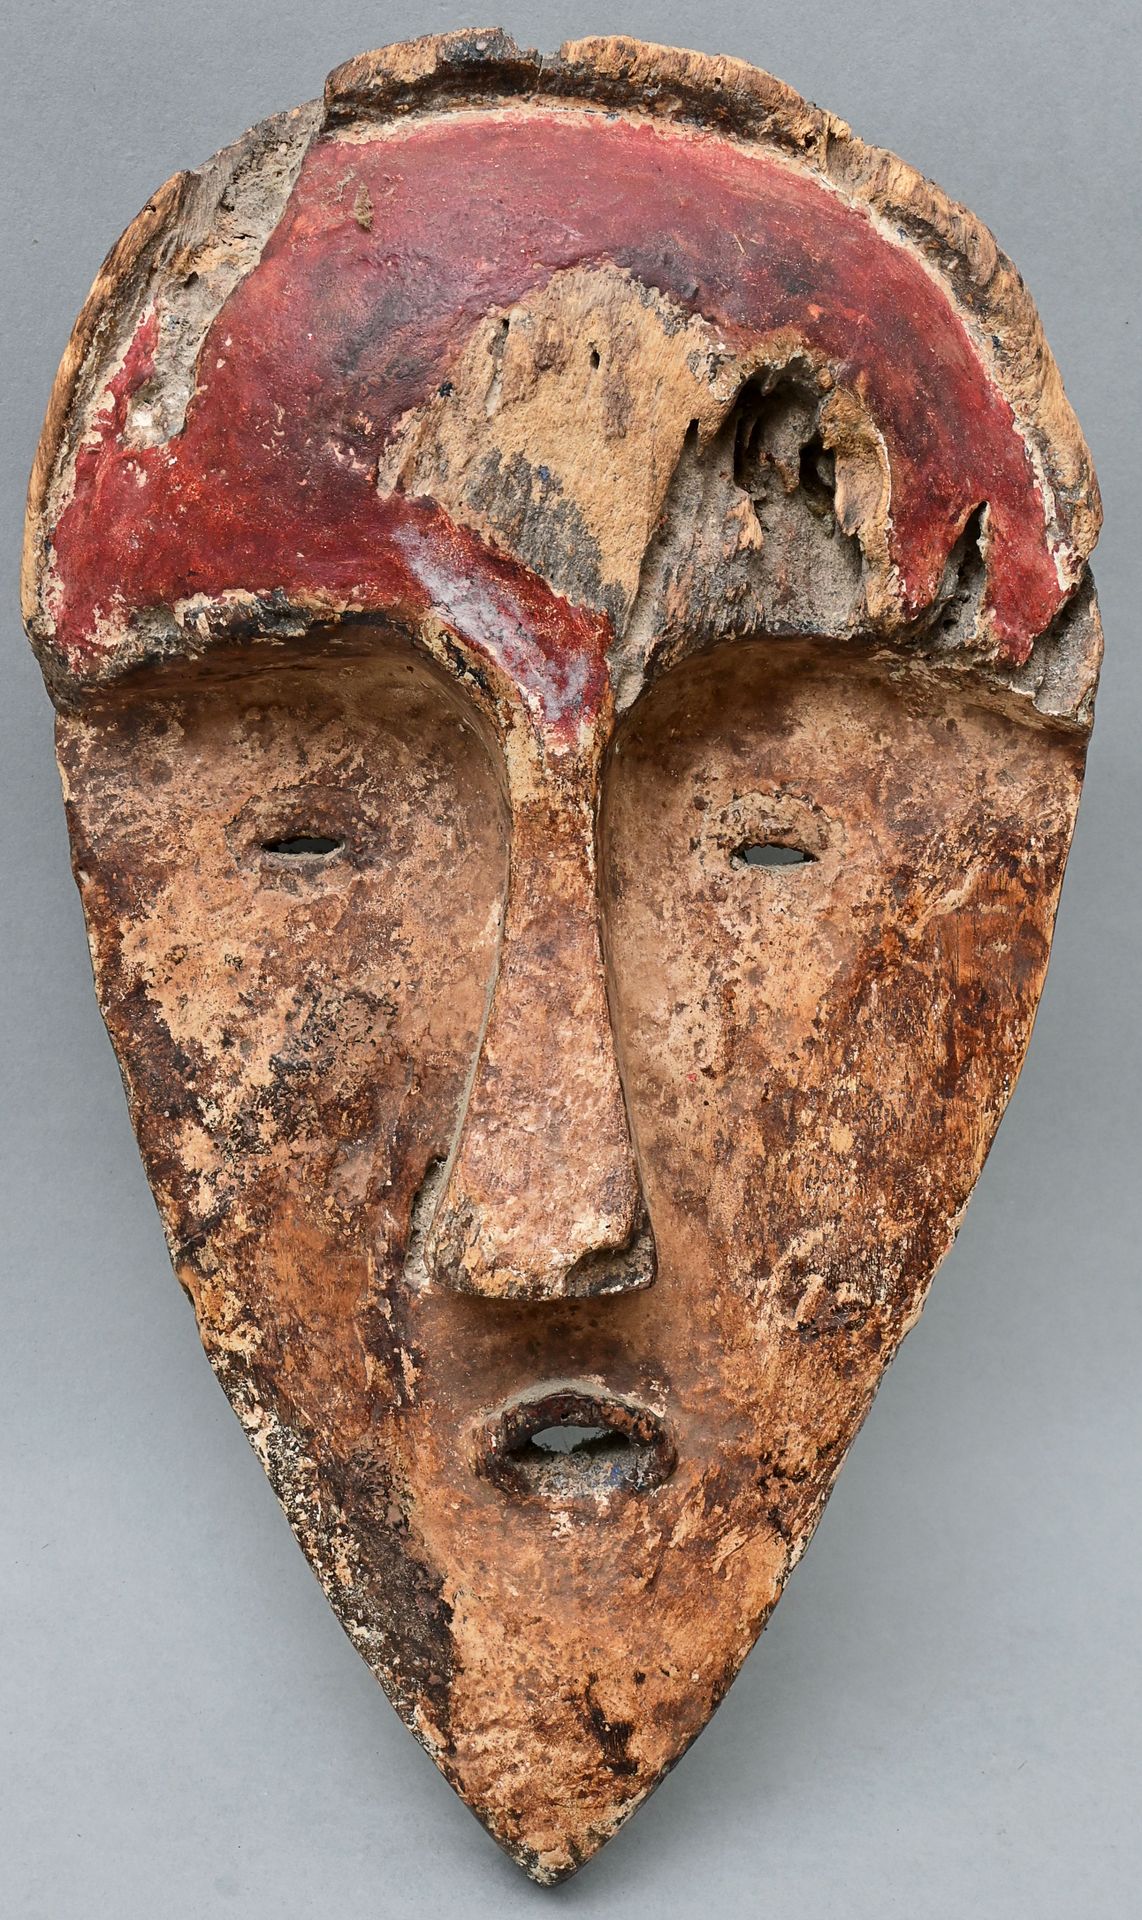 Null 薇薇/加蓬（？）风格的面罩，木质，脸部形状渐变，白色/红色涂饰。重度风化。高34.5厘米 出处：私人财产，符腾堡州 加蓬（？）维族风格的面具，木质，雕&hellip;